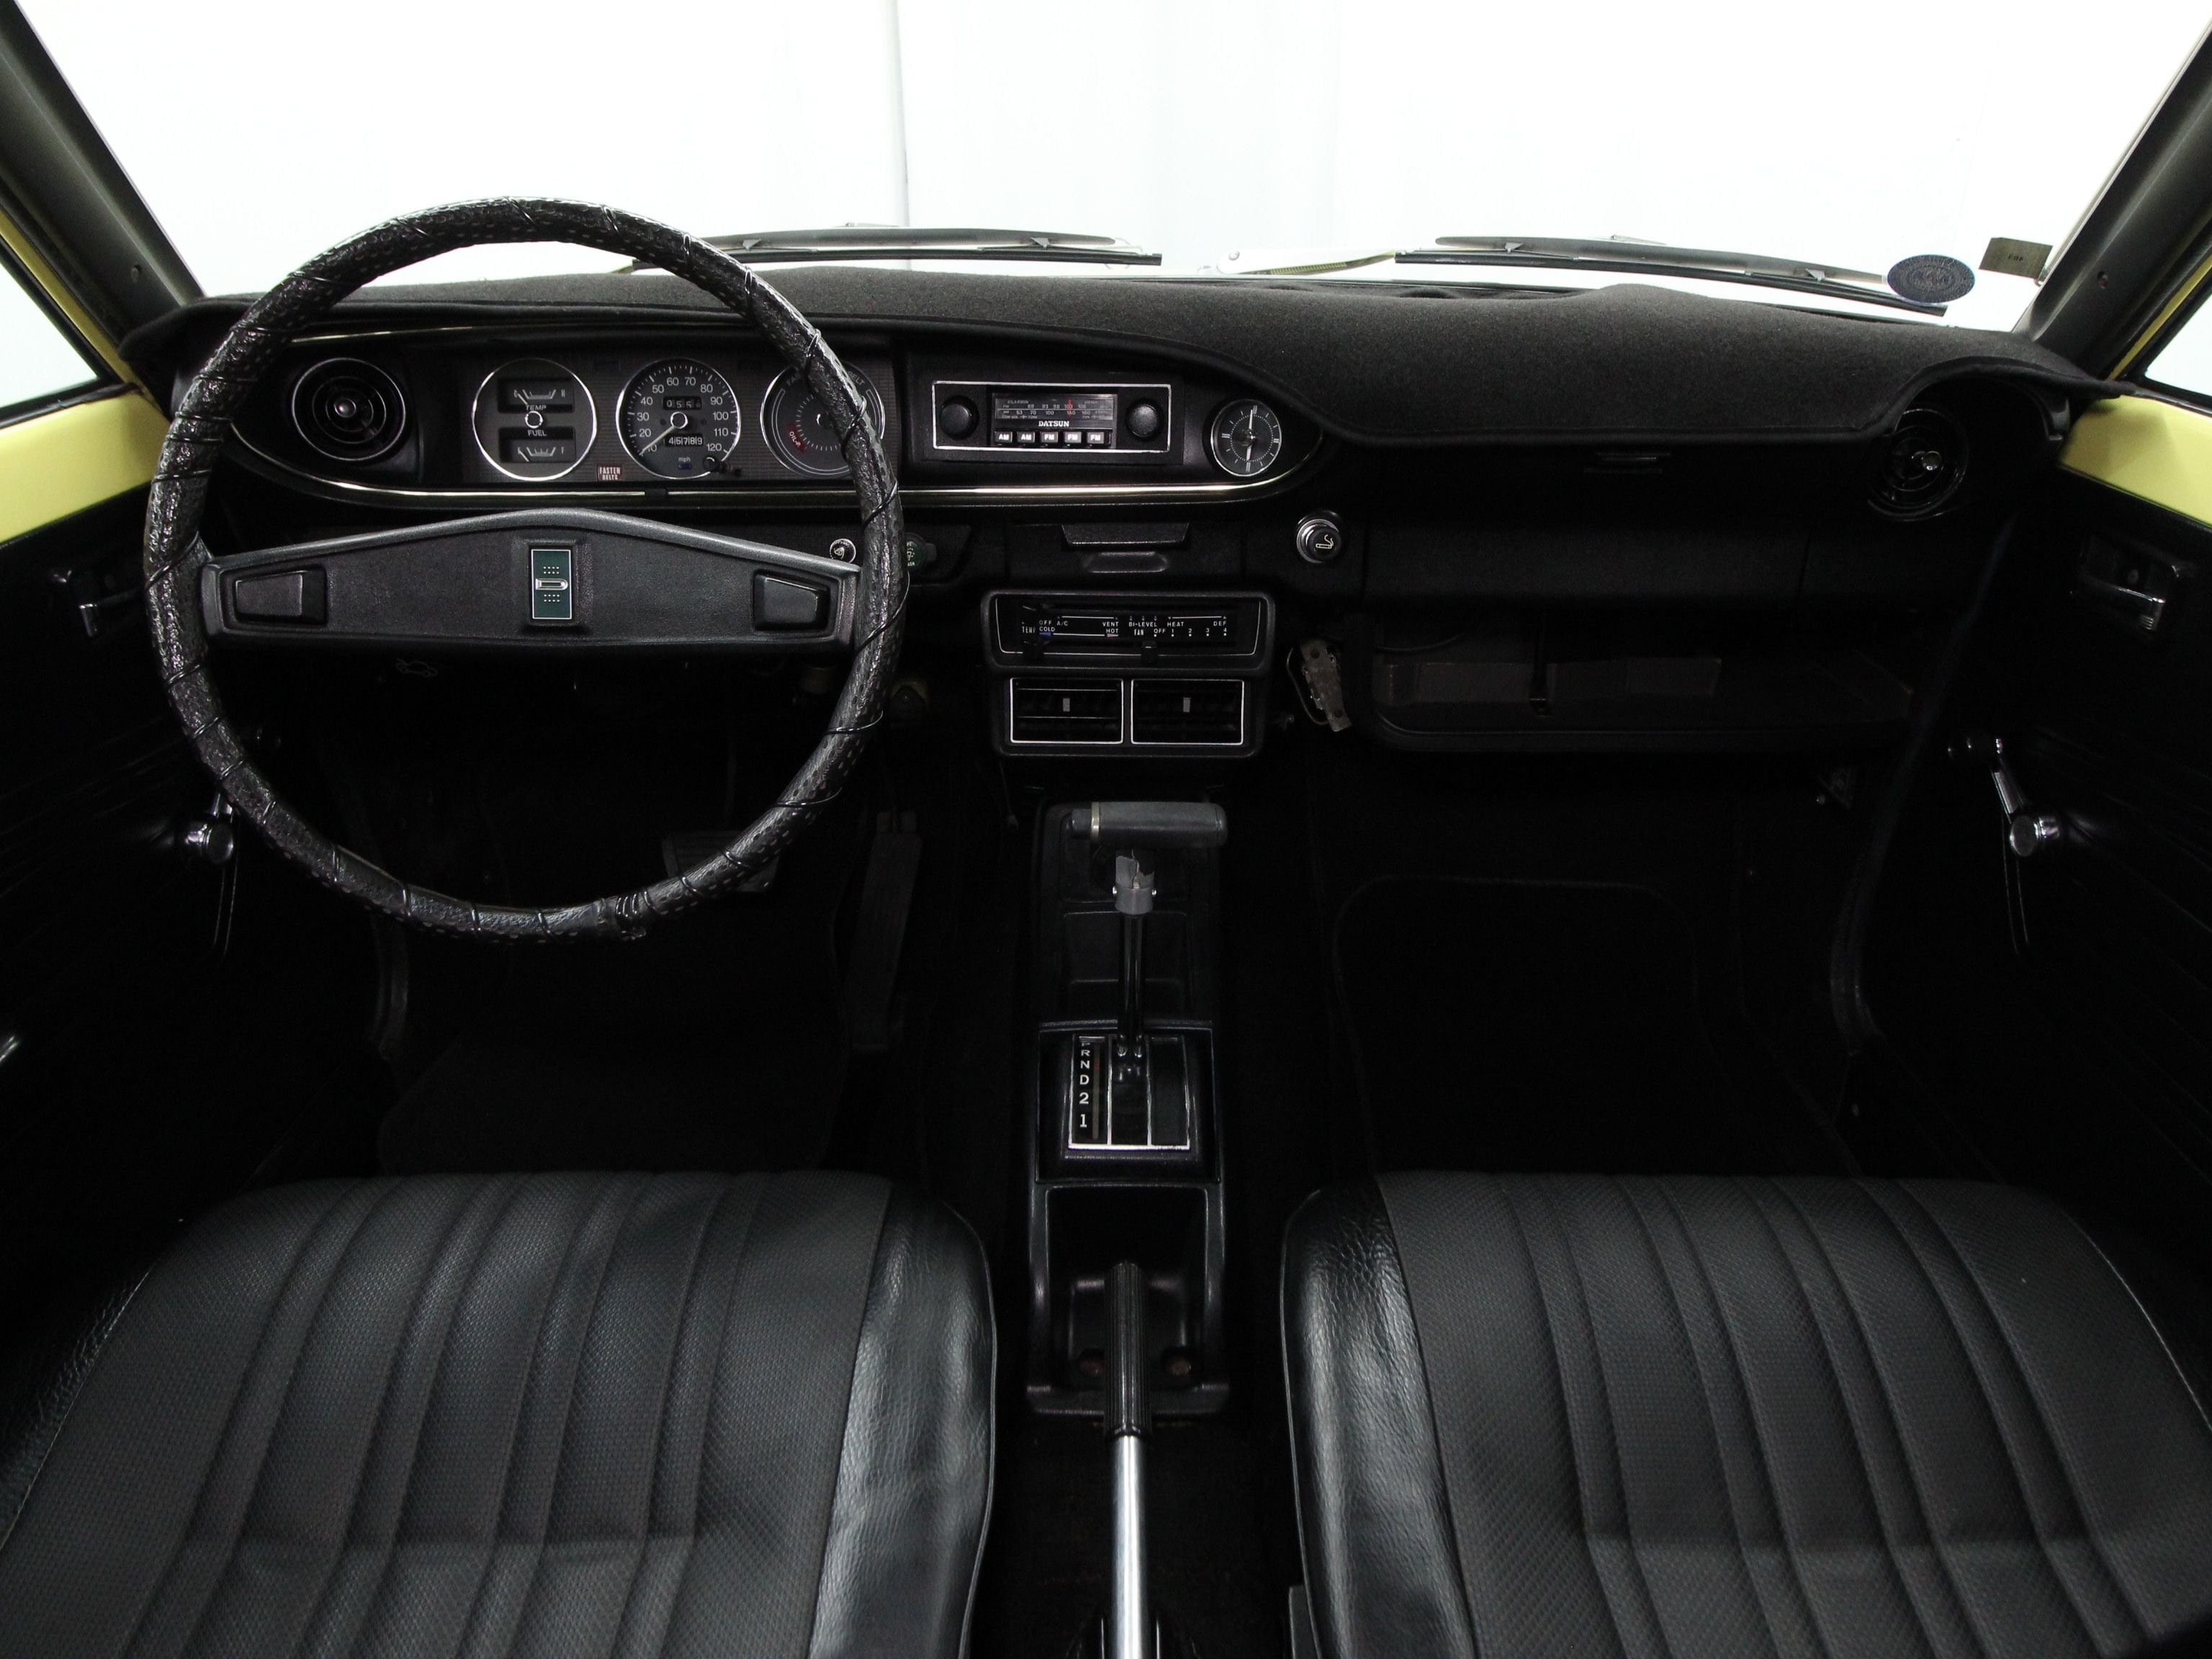 1974 Datsun 710 42